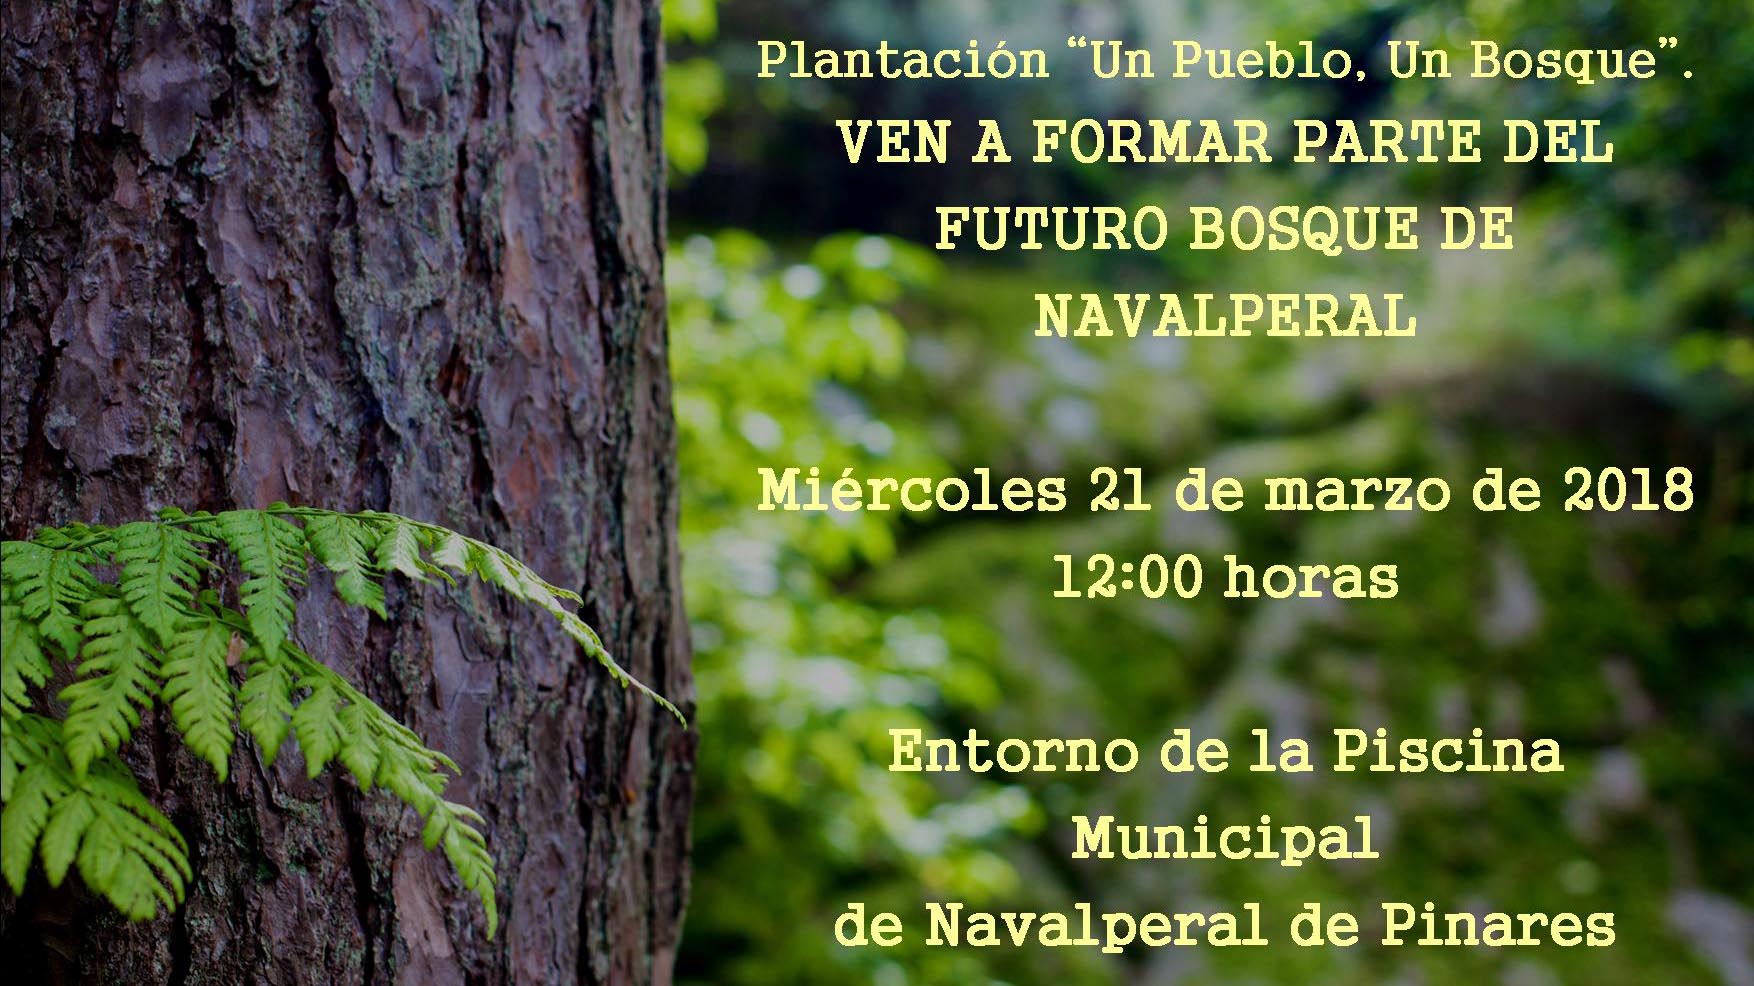 El proyecto “Un pueblo, un bosque” realiza su plantación en Navalperal de Pinares